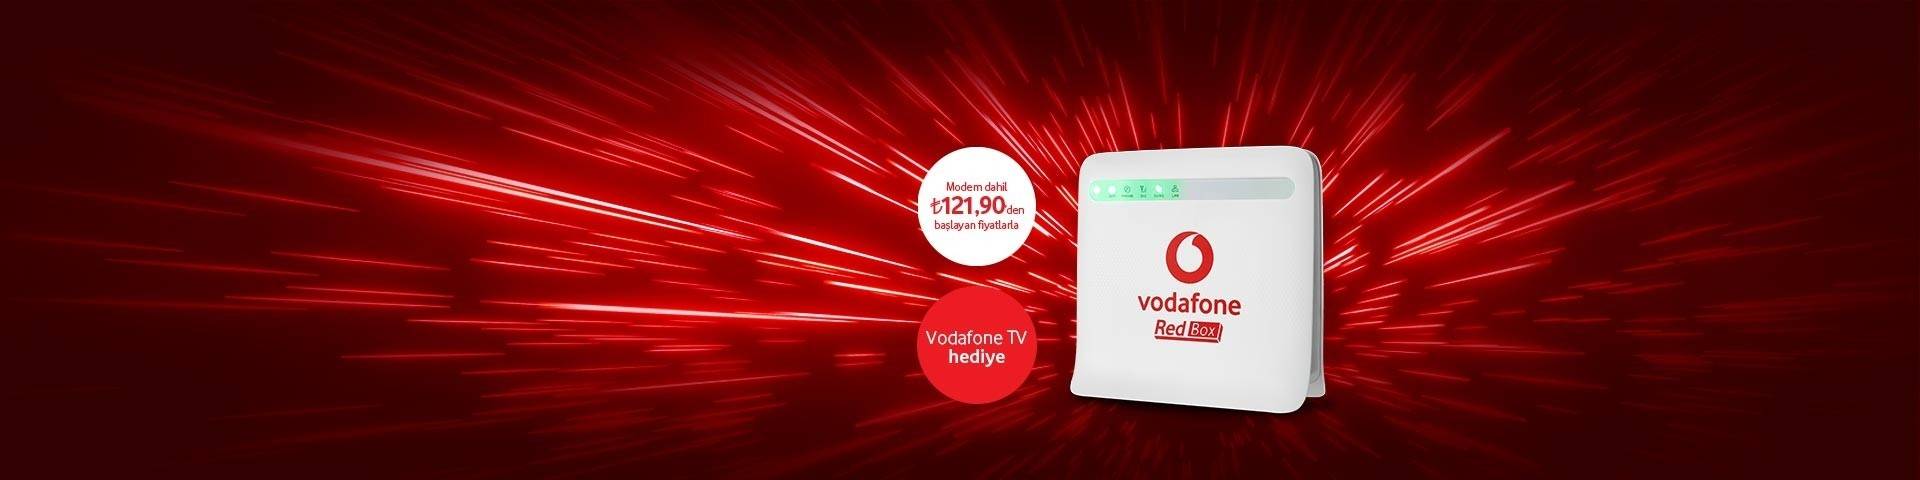 Vodafone Evde Redbox Tarifeleri